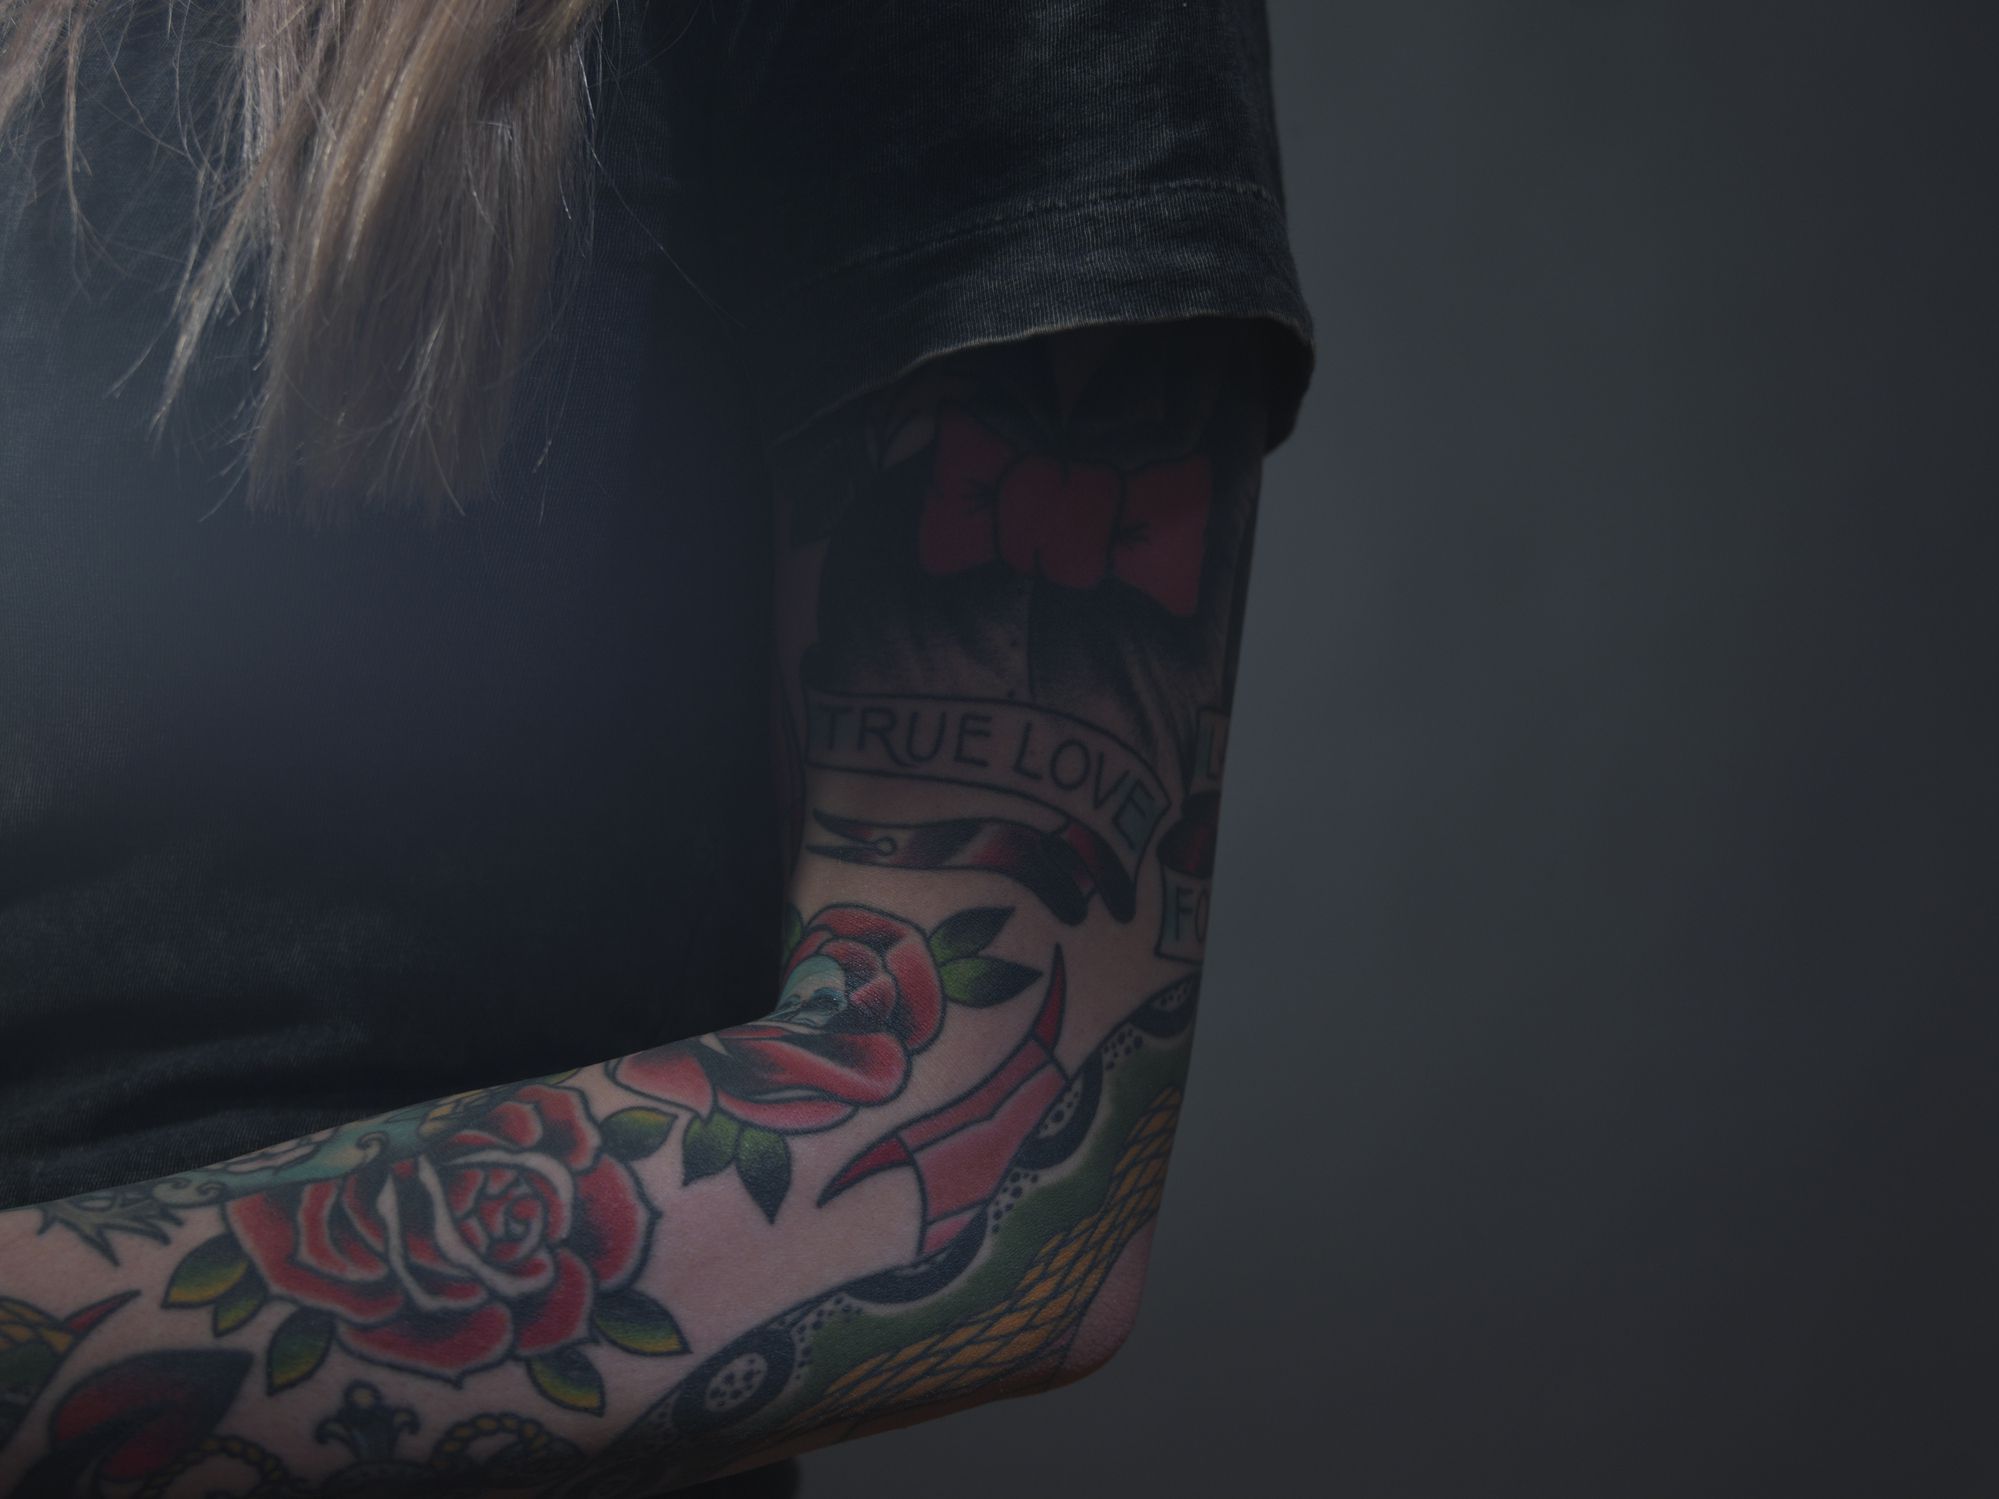 Si bien puede suponerse que es un fenómeno moderno, los tatuajes en el cuerpo constituyen una práctica muy antigua (Getty)